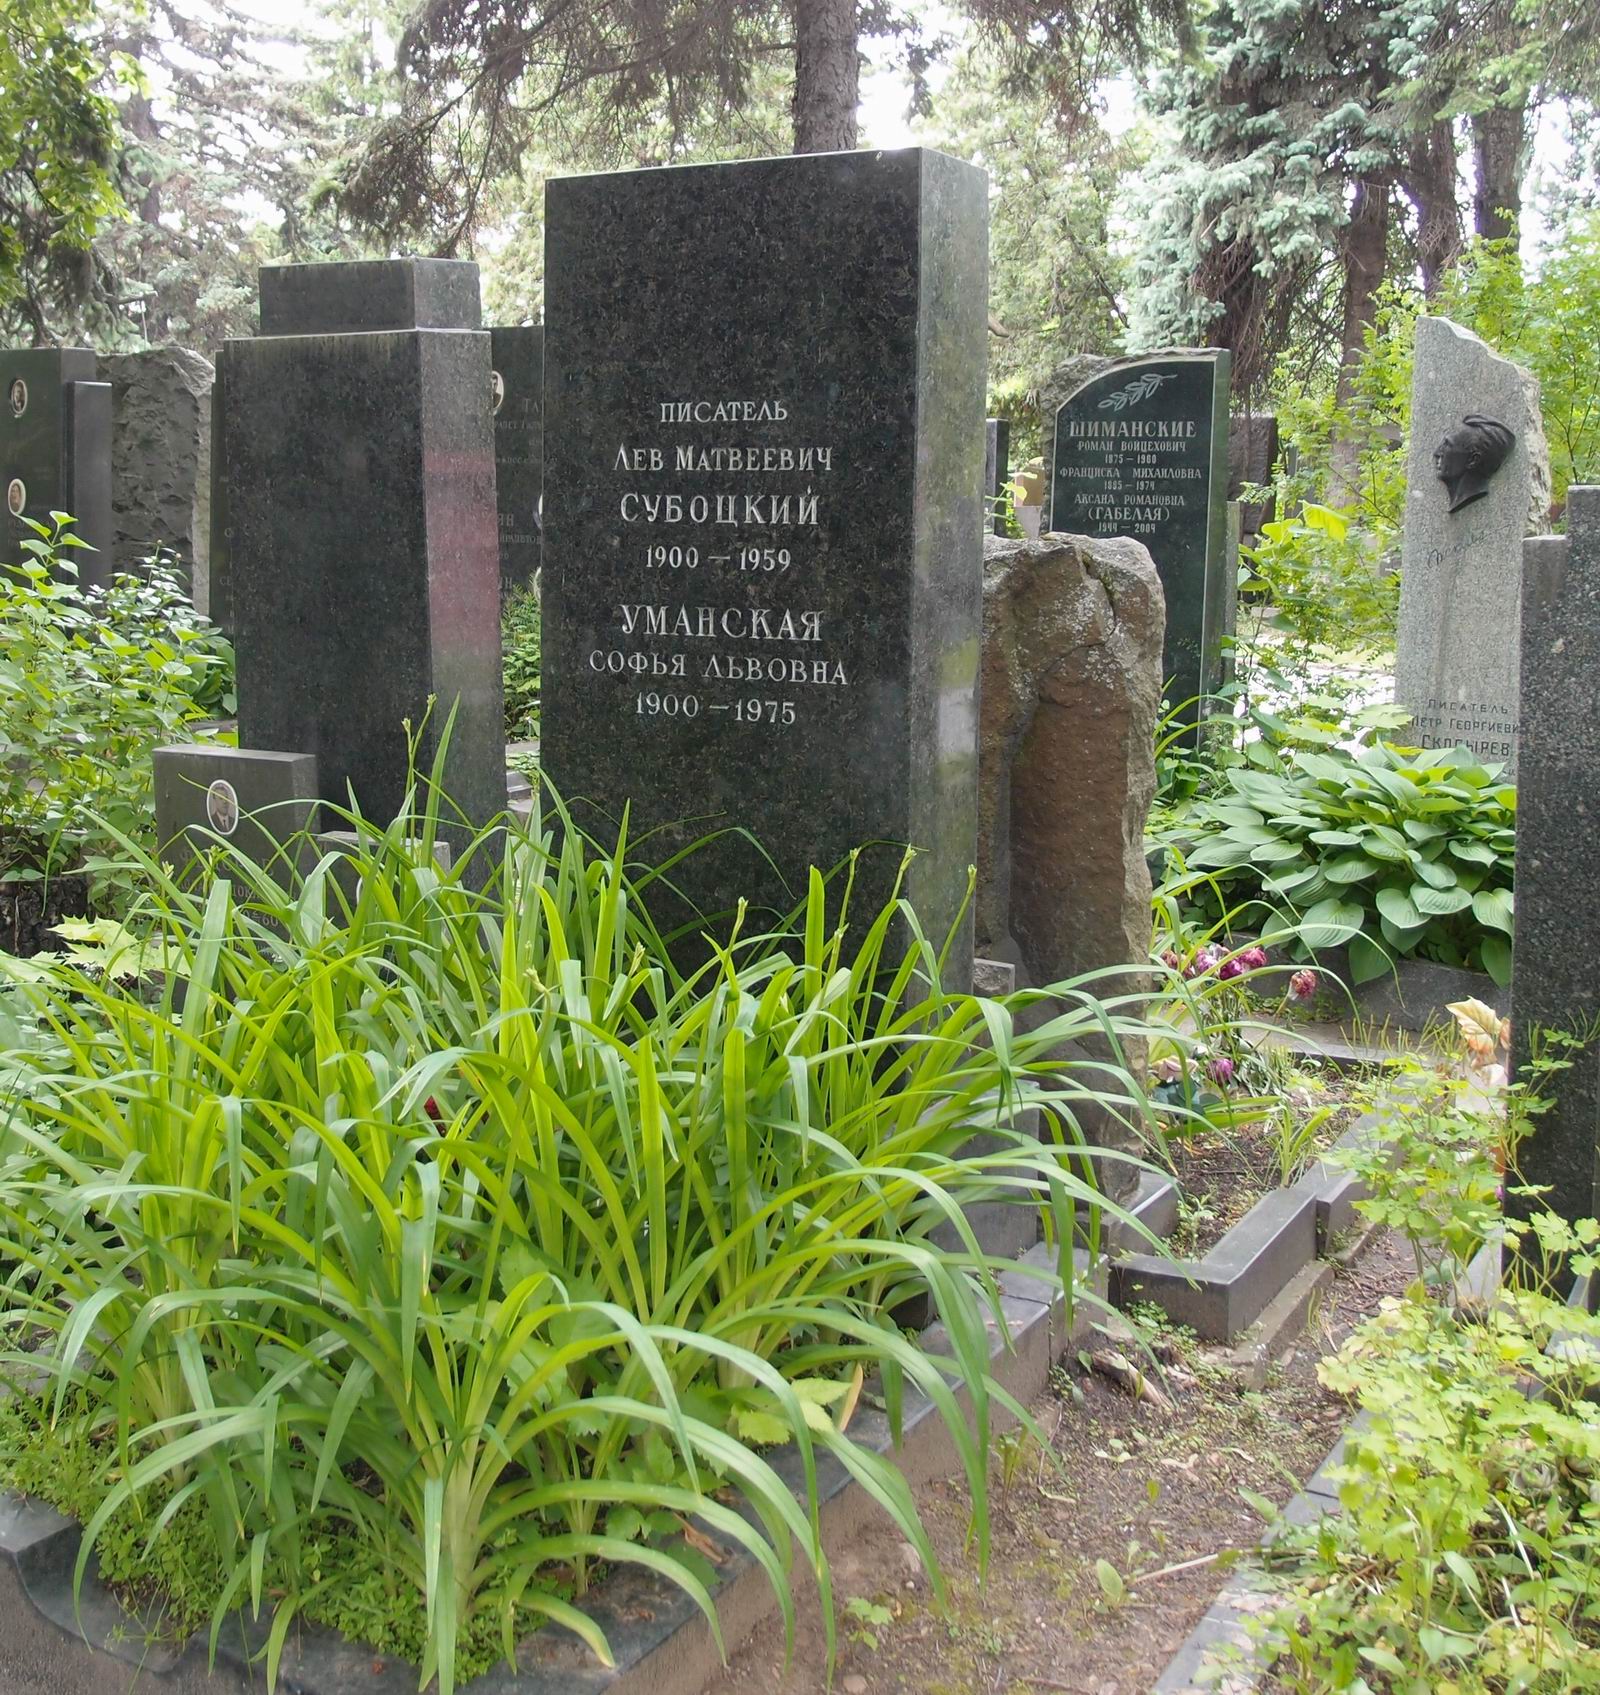 Памятник на могиле Субоцкого Л.М. (1900-1959), на Новодевичьем кладбище (5-41-8).